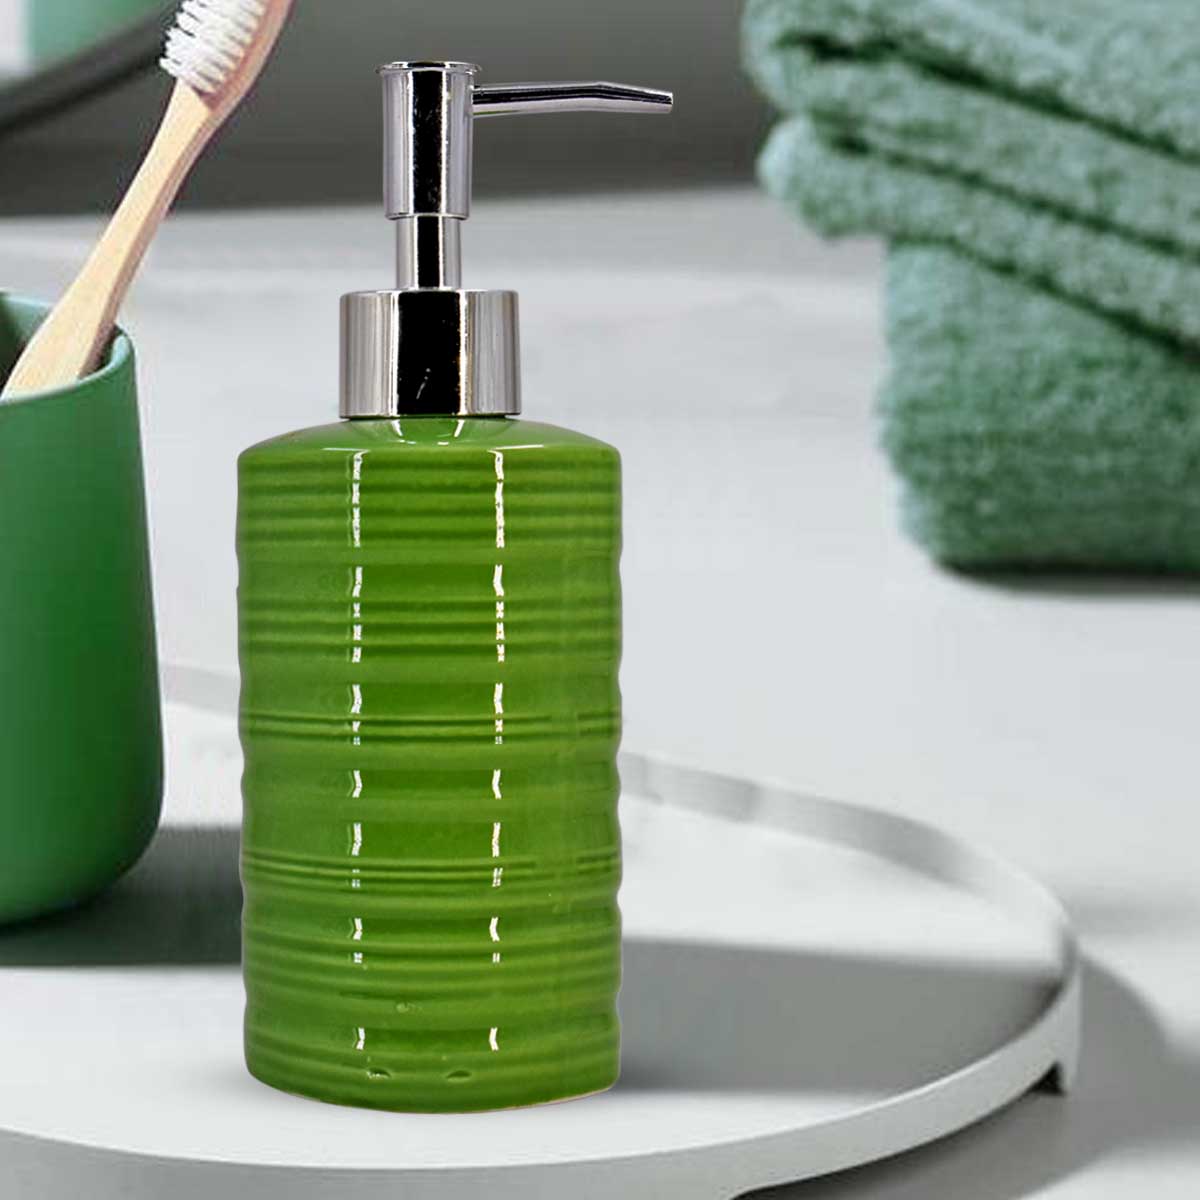 Kookee Ceramic Soap Dispenser for Bathroom handwash, refillable pump bottle for Kitchen hand wash basin, Set of 1, Green (7974)